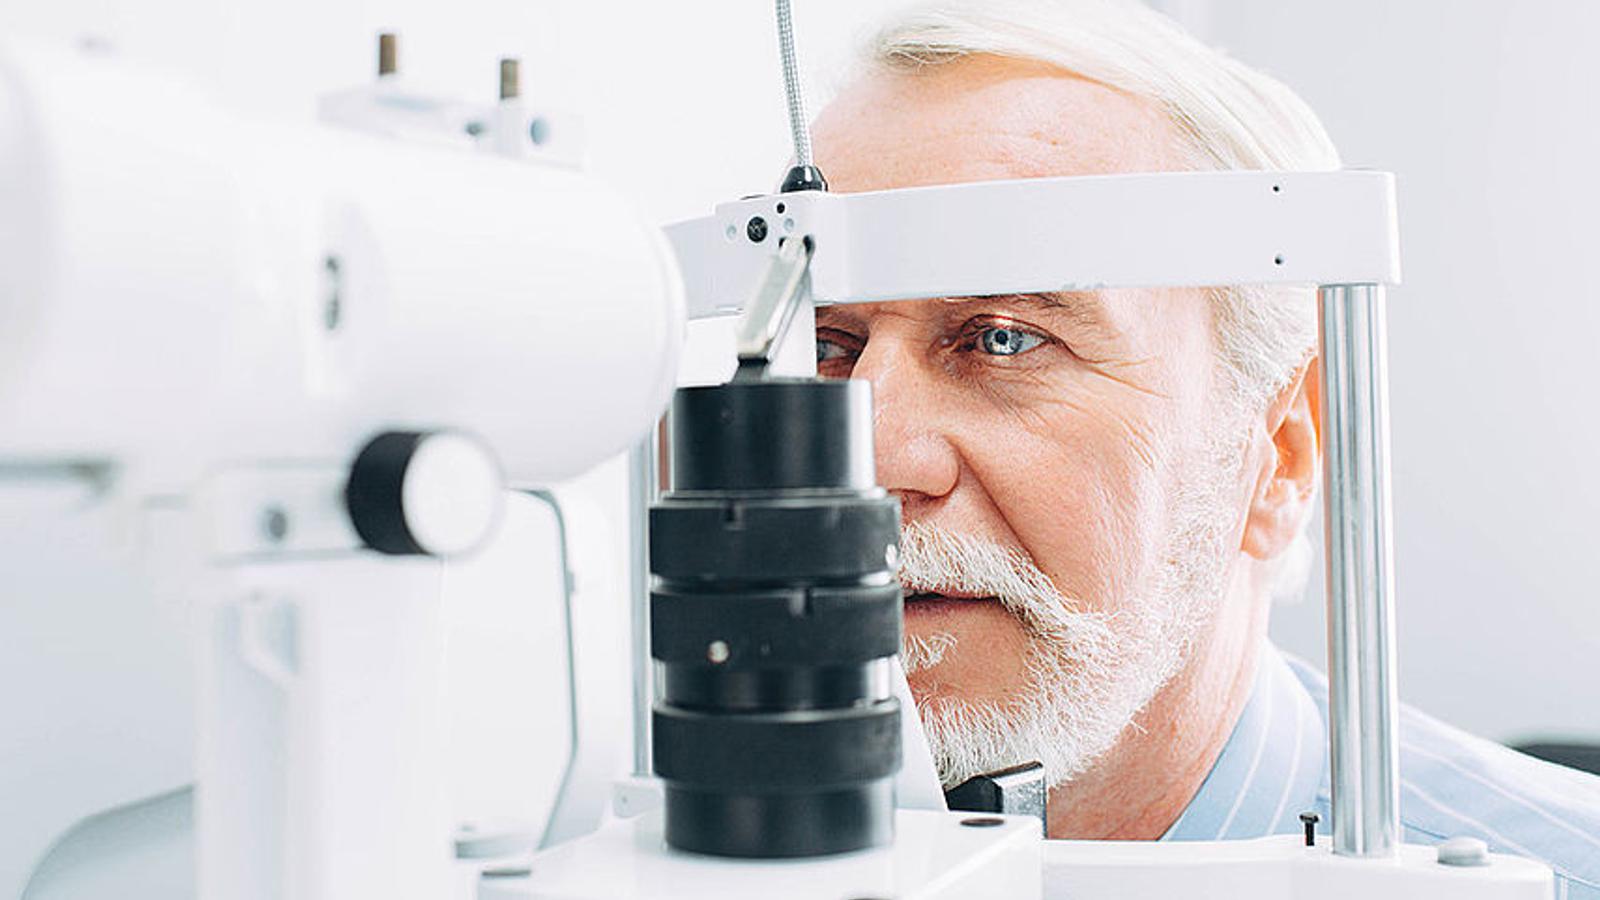 Mann mit Grüner Star macht eine Untersuchung beim Augenarzt